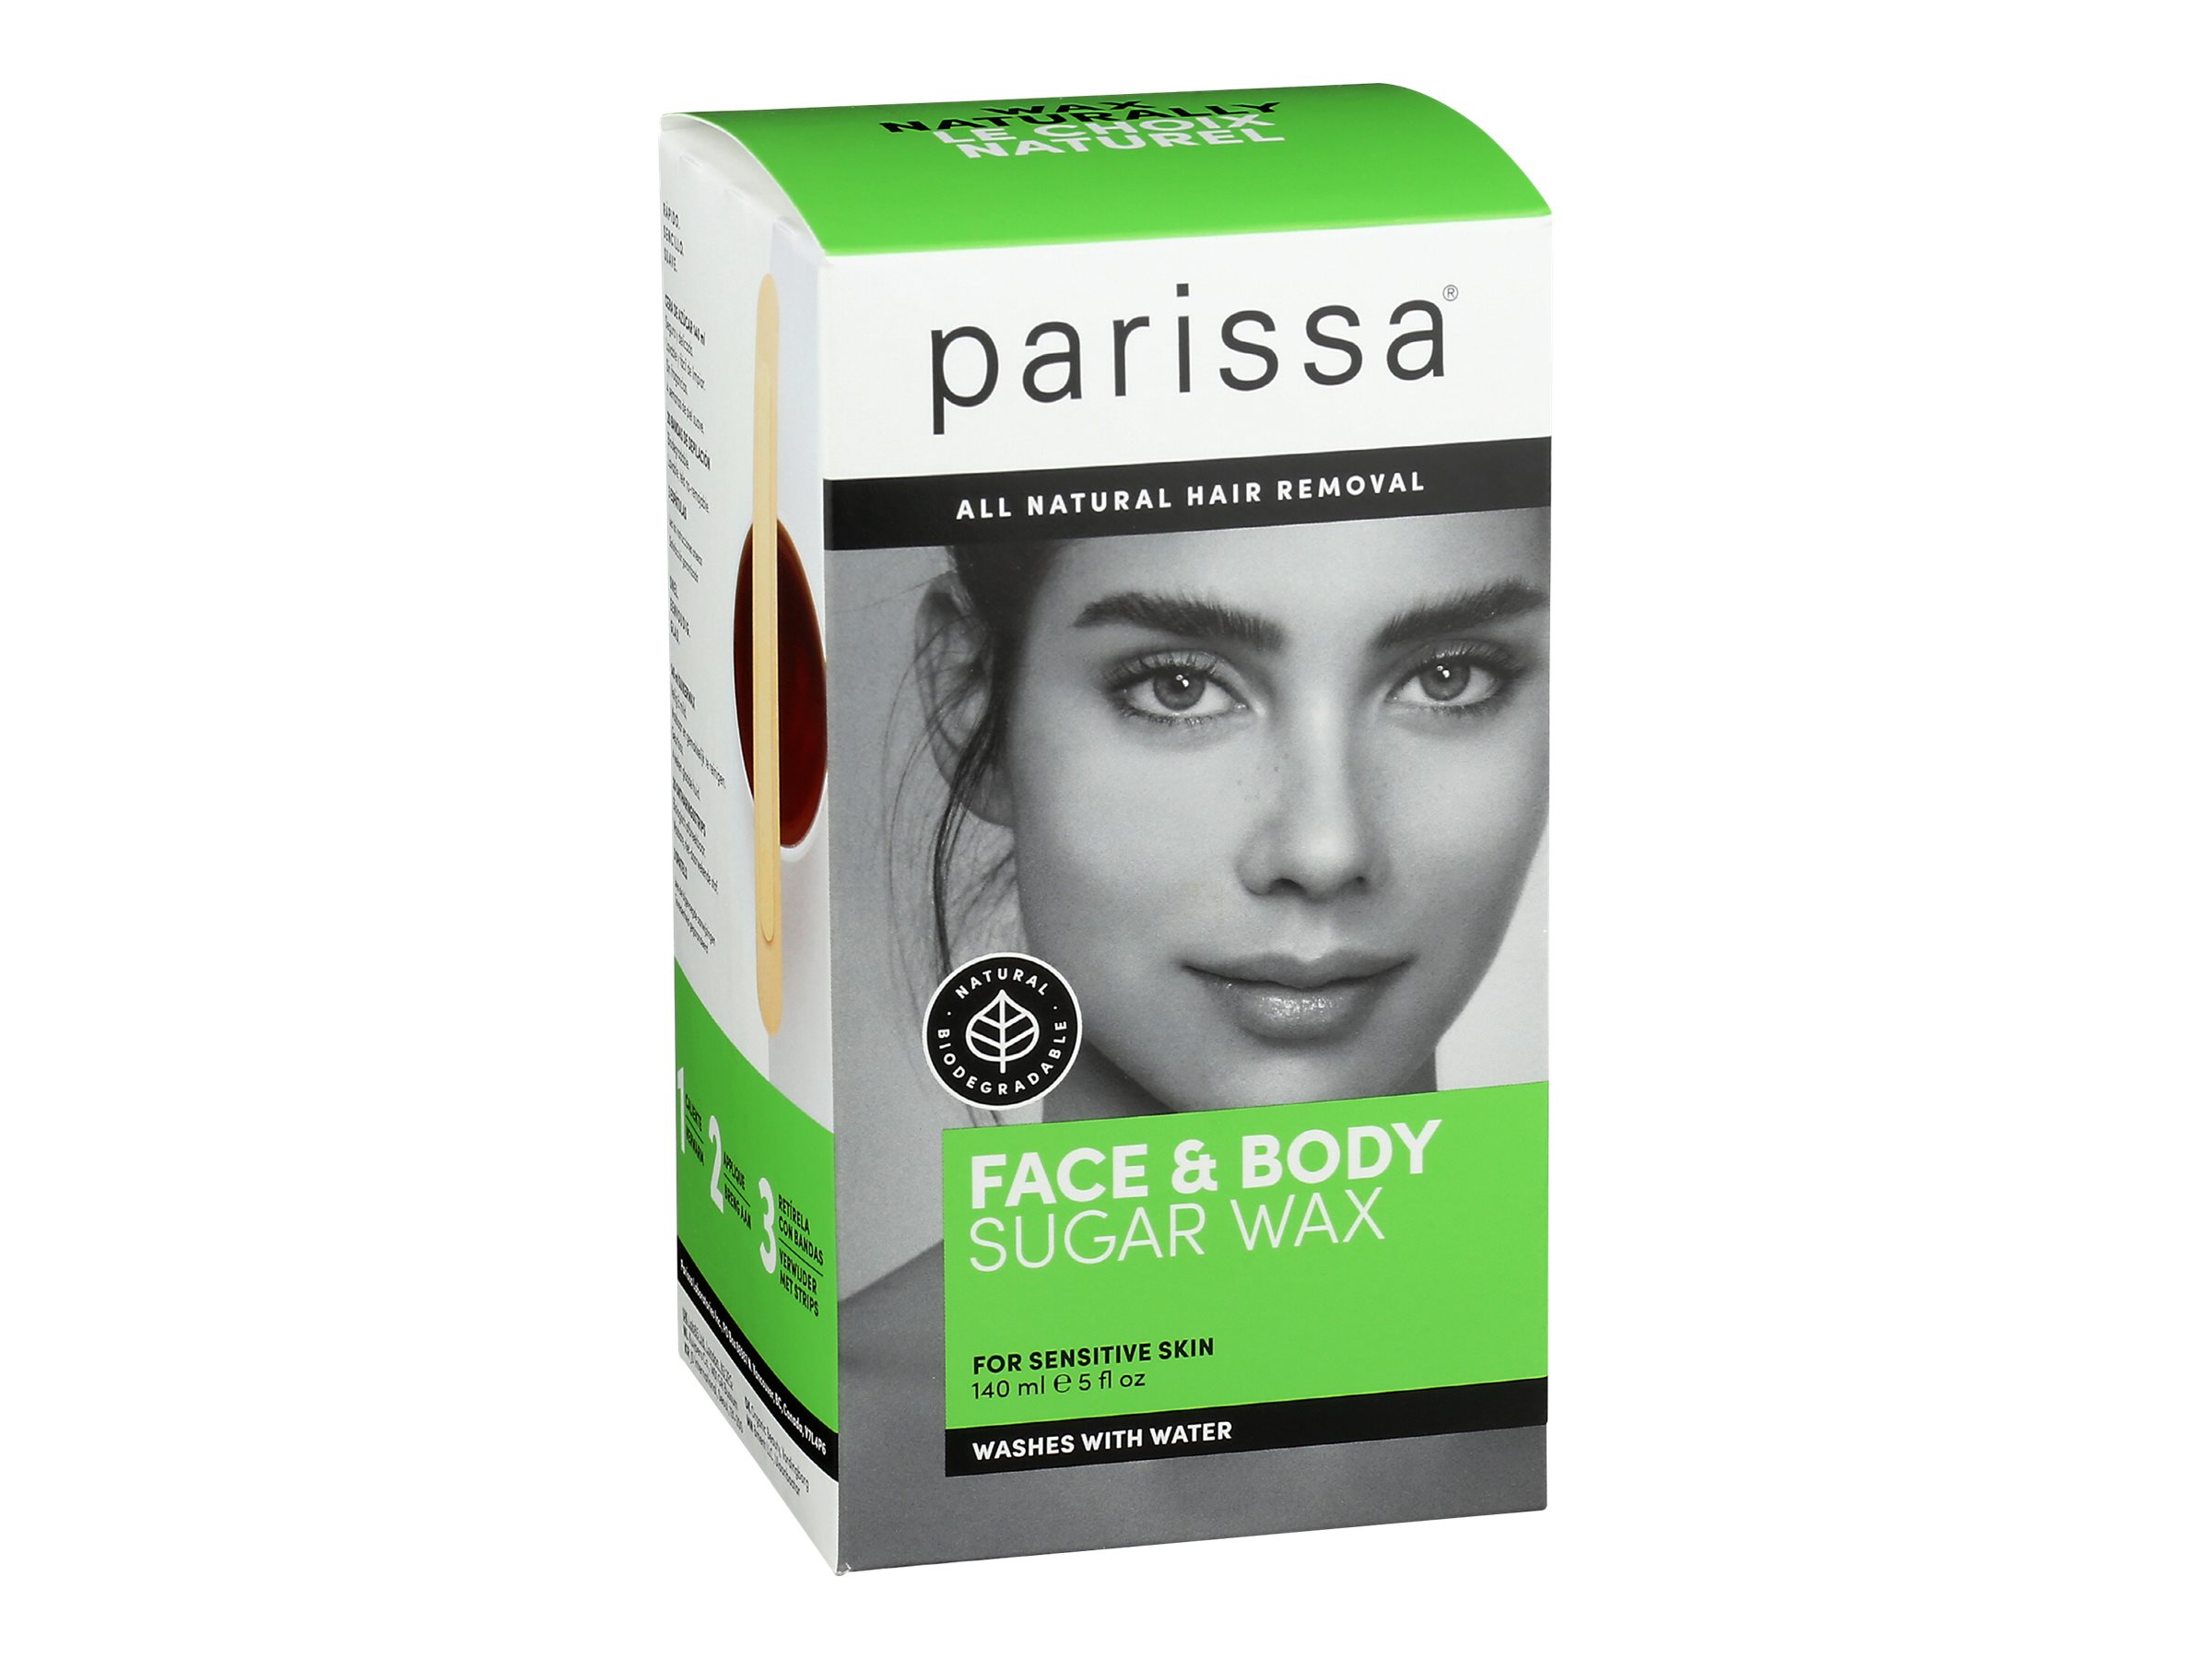 Parissa 8 oz Sugar Wax Hair Removal